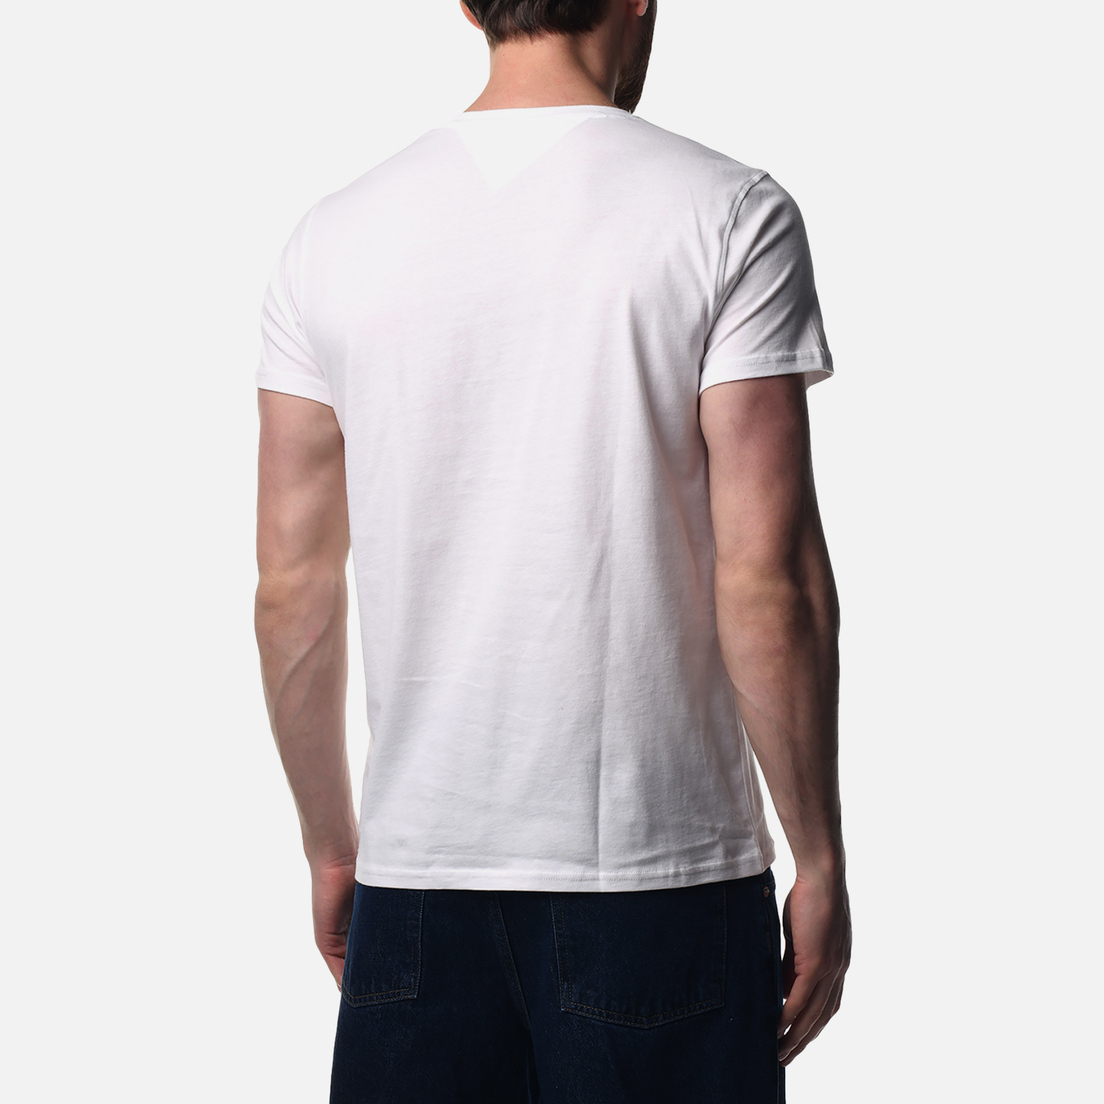 Tommy Jeans Комплект мужских футболок 2-Pack Exclusive Extra Slim